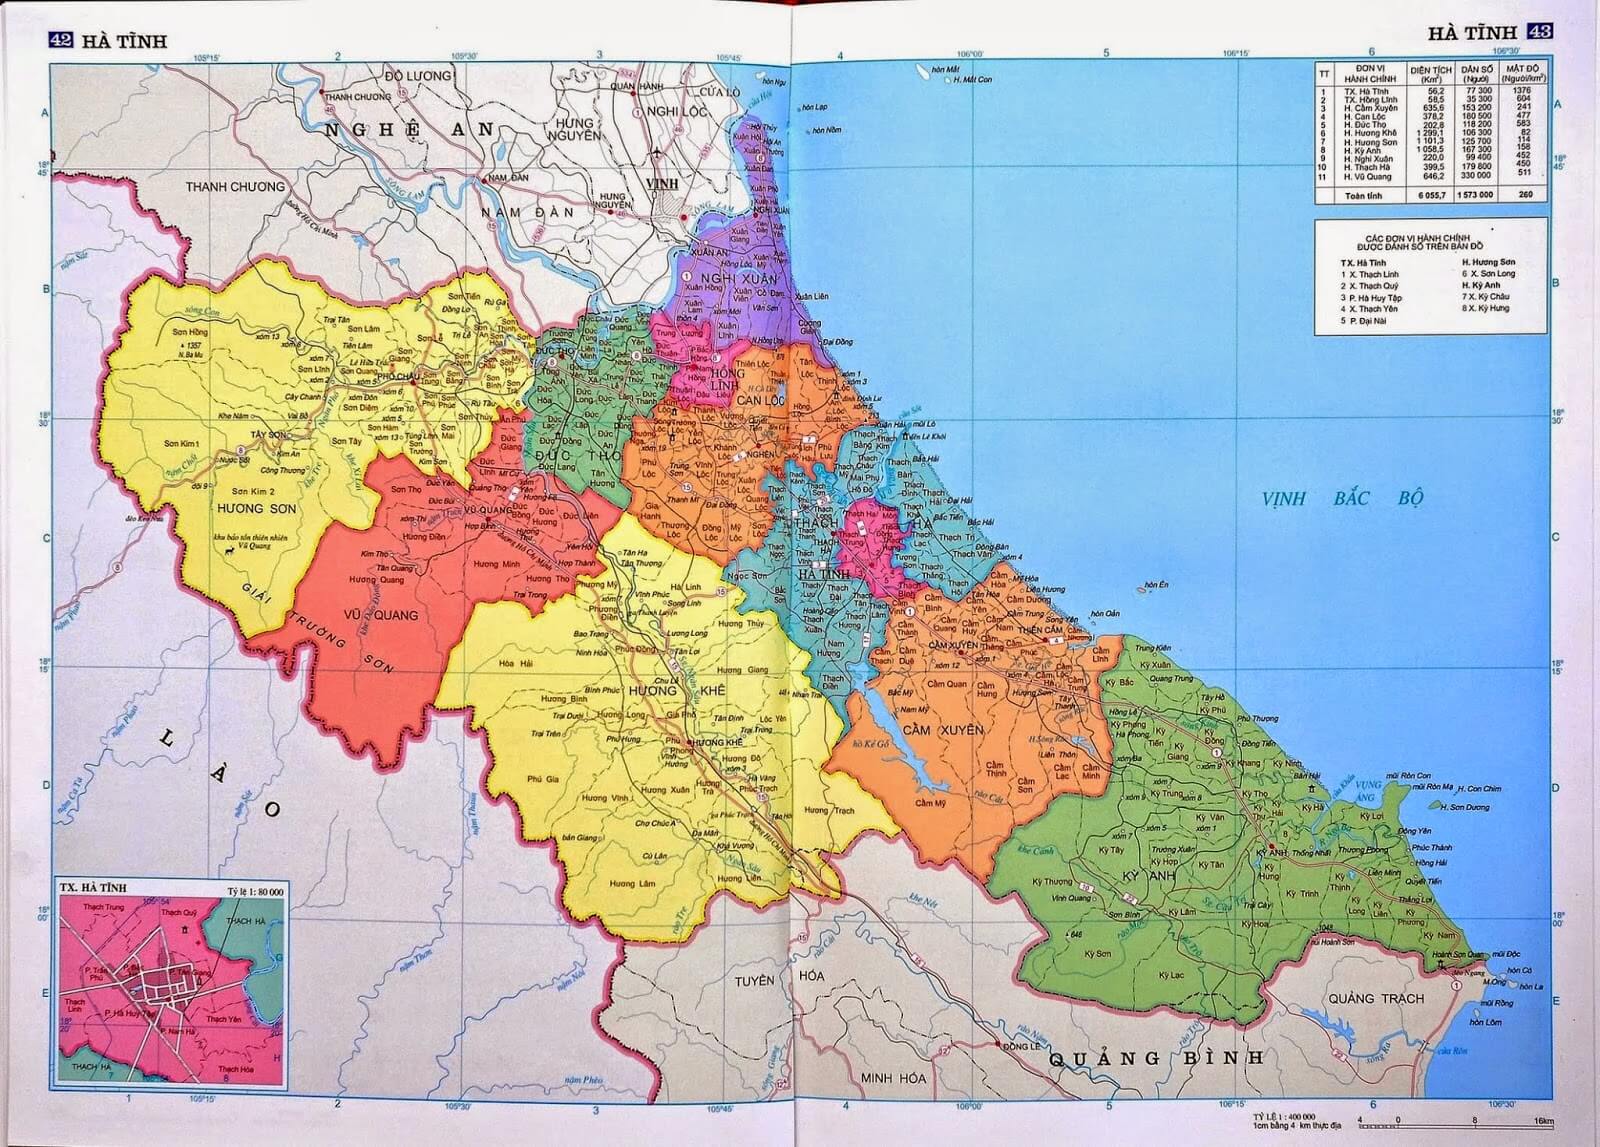 Bản đồ huyện Vũ Quang: Khám phá huyện Vũ Quang qua bản đồ chi tiết trên app của chúng tôi. Cập nhật địa điểm du lịch, ẩm thực và các trung tâm y tế giúp bạn lên kế hoạch chuyến đi hoàn hảo.